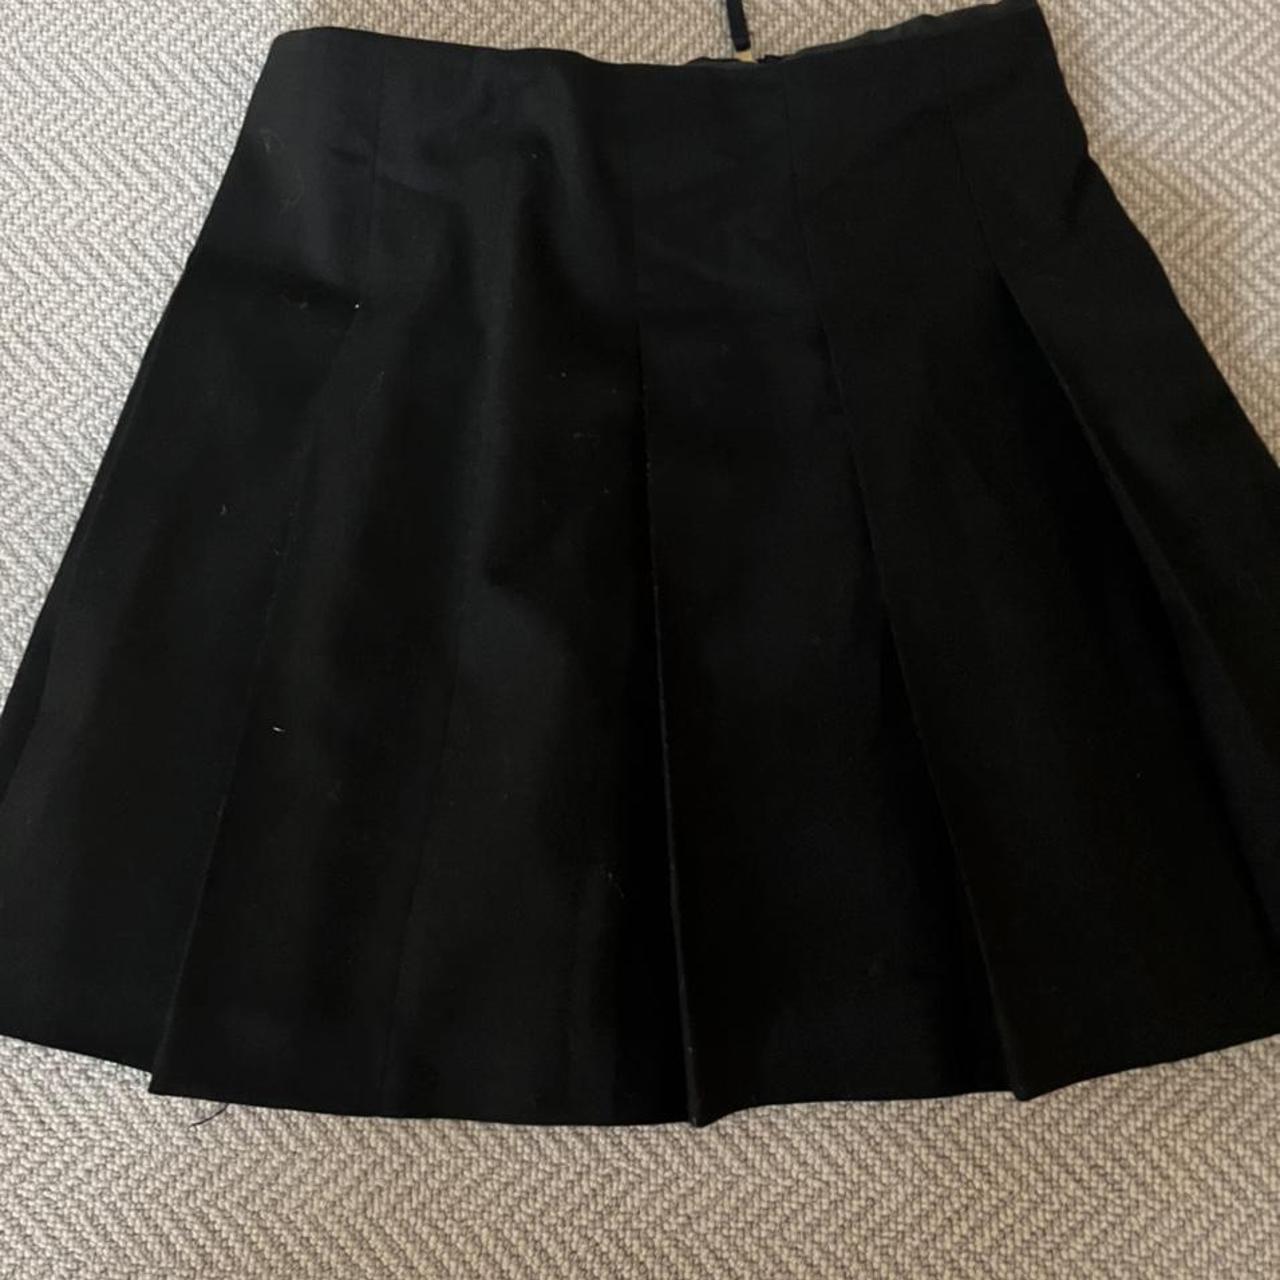 J.Crew Women's Black Skirt